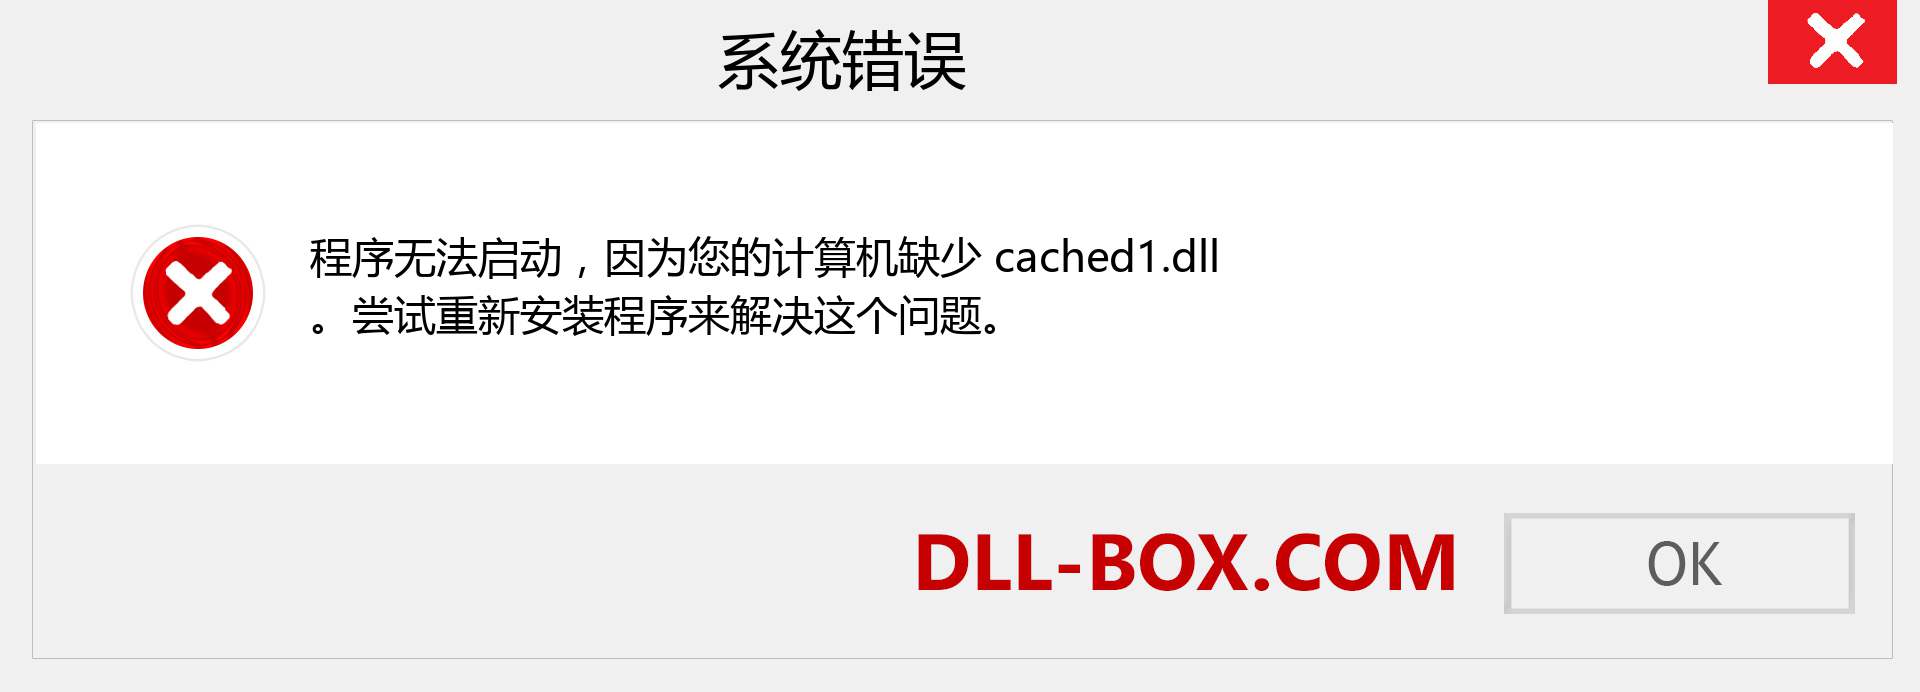 cached1.dll 文件丢失？。 适用于 Windows 7、8、10 的下载 - 修复 Windows、照片、图像上的 cached1 dll 丢失错误